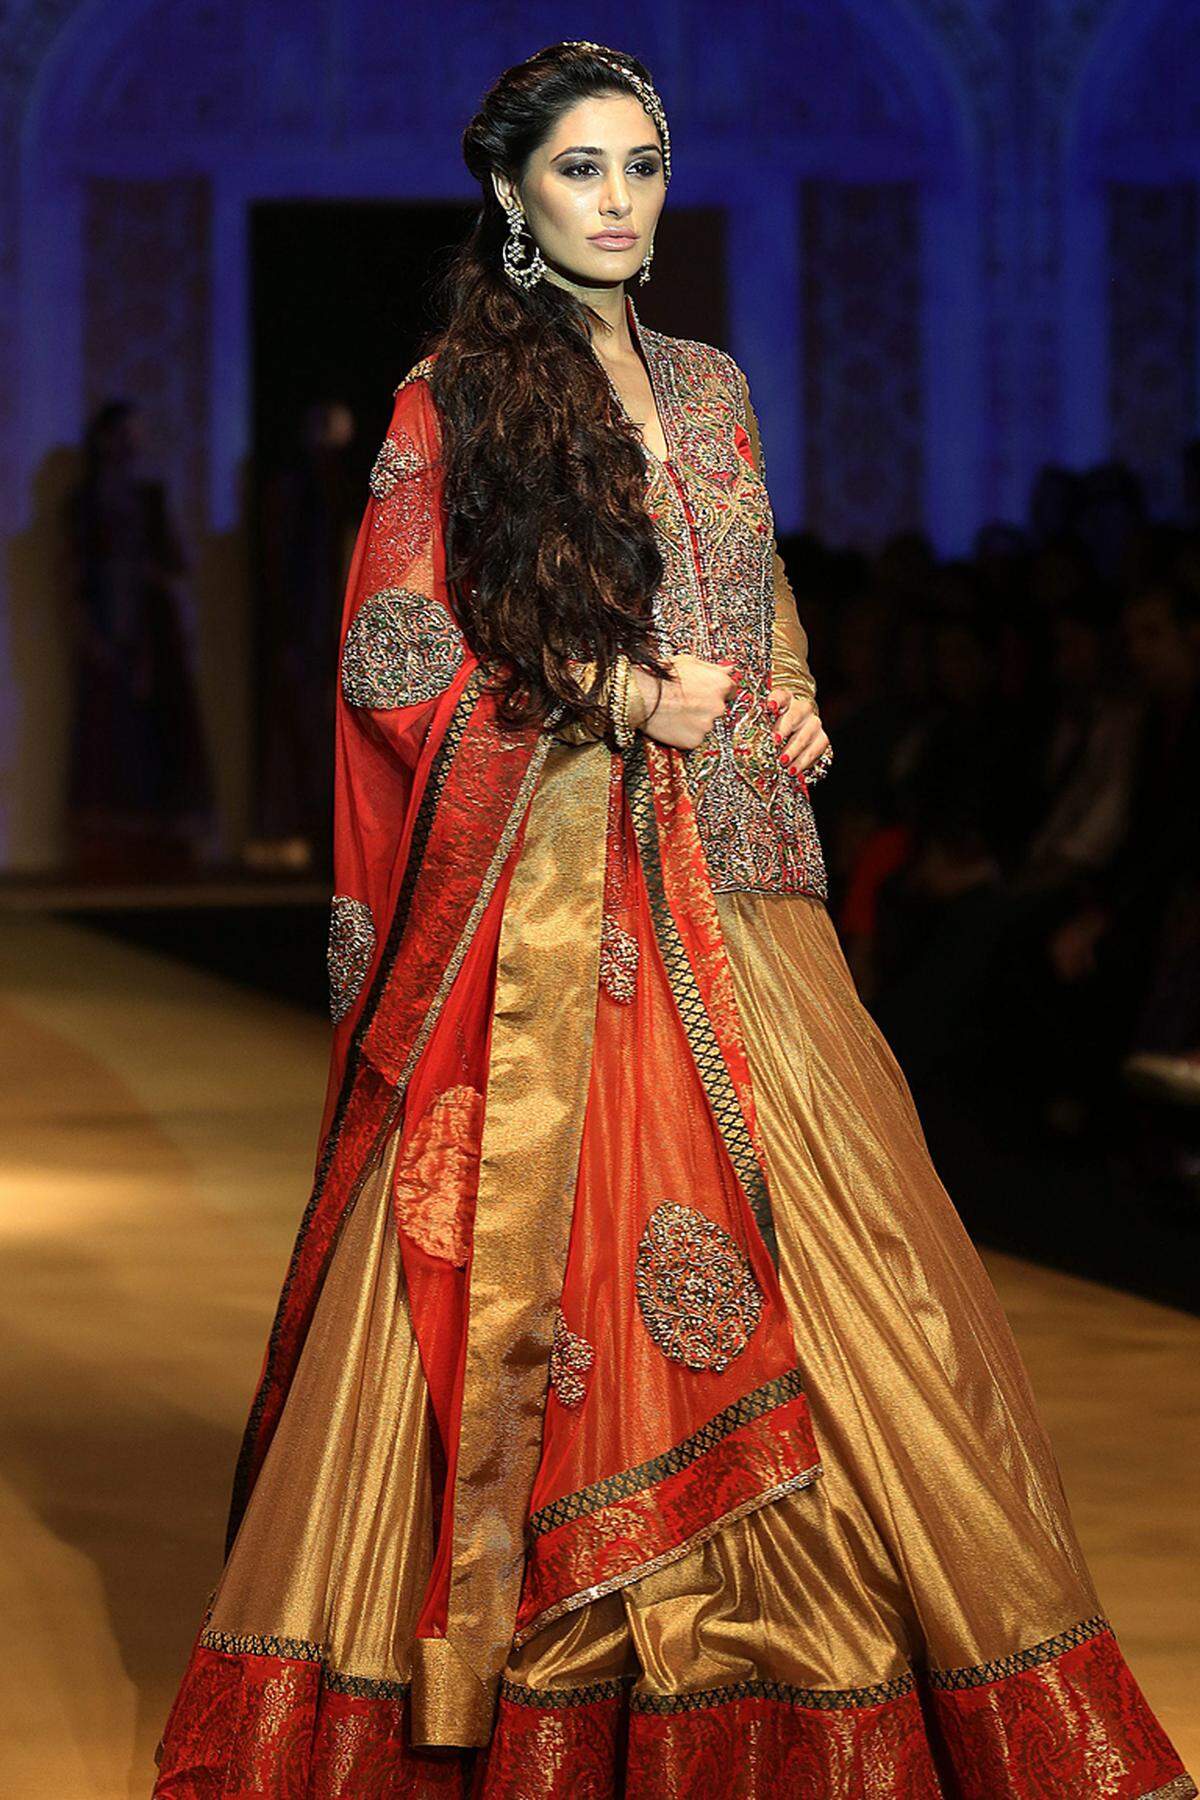 Ende Juli fand in Neu-Delhi die India Bridal Fashion Week statt. Auch Bollywood-Stars wie Nargis Fakhri präsentierten Brautkleider, wie hier eines von Ashima and Leena.